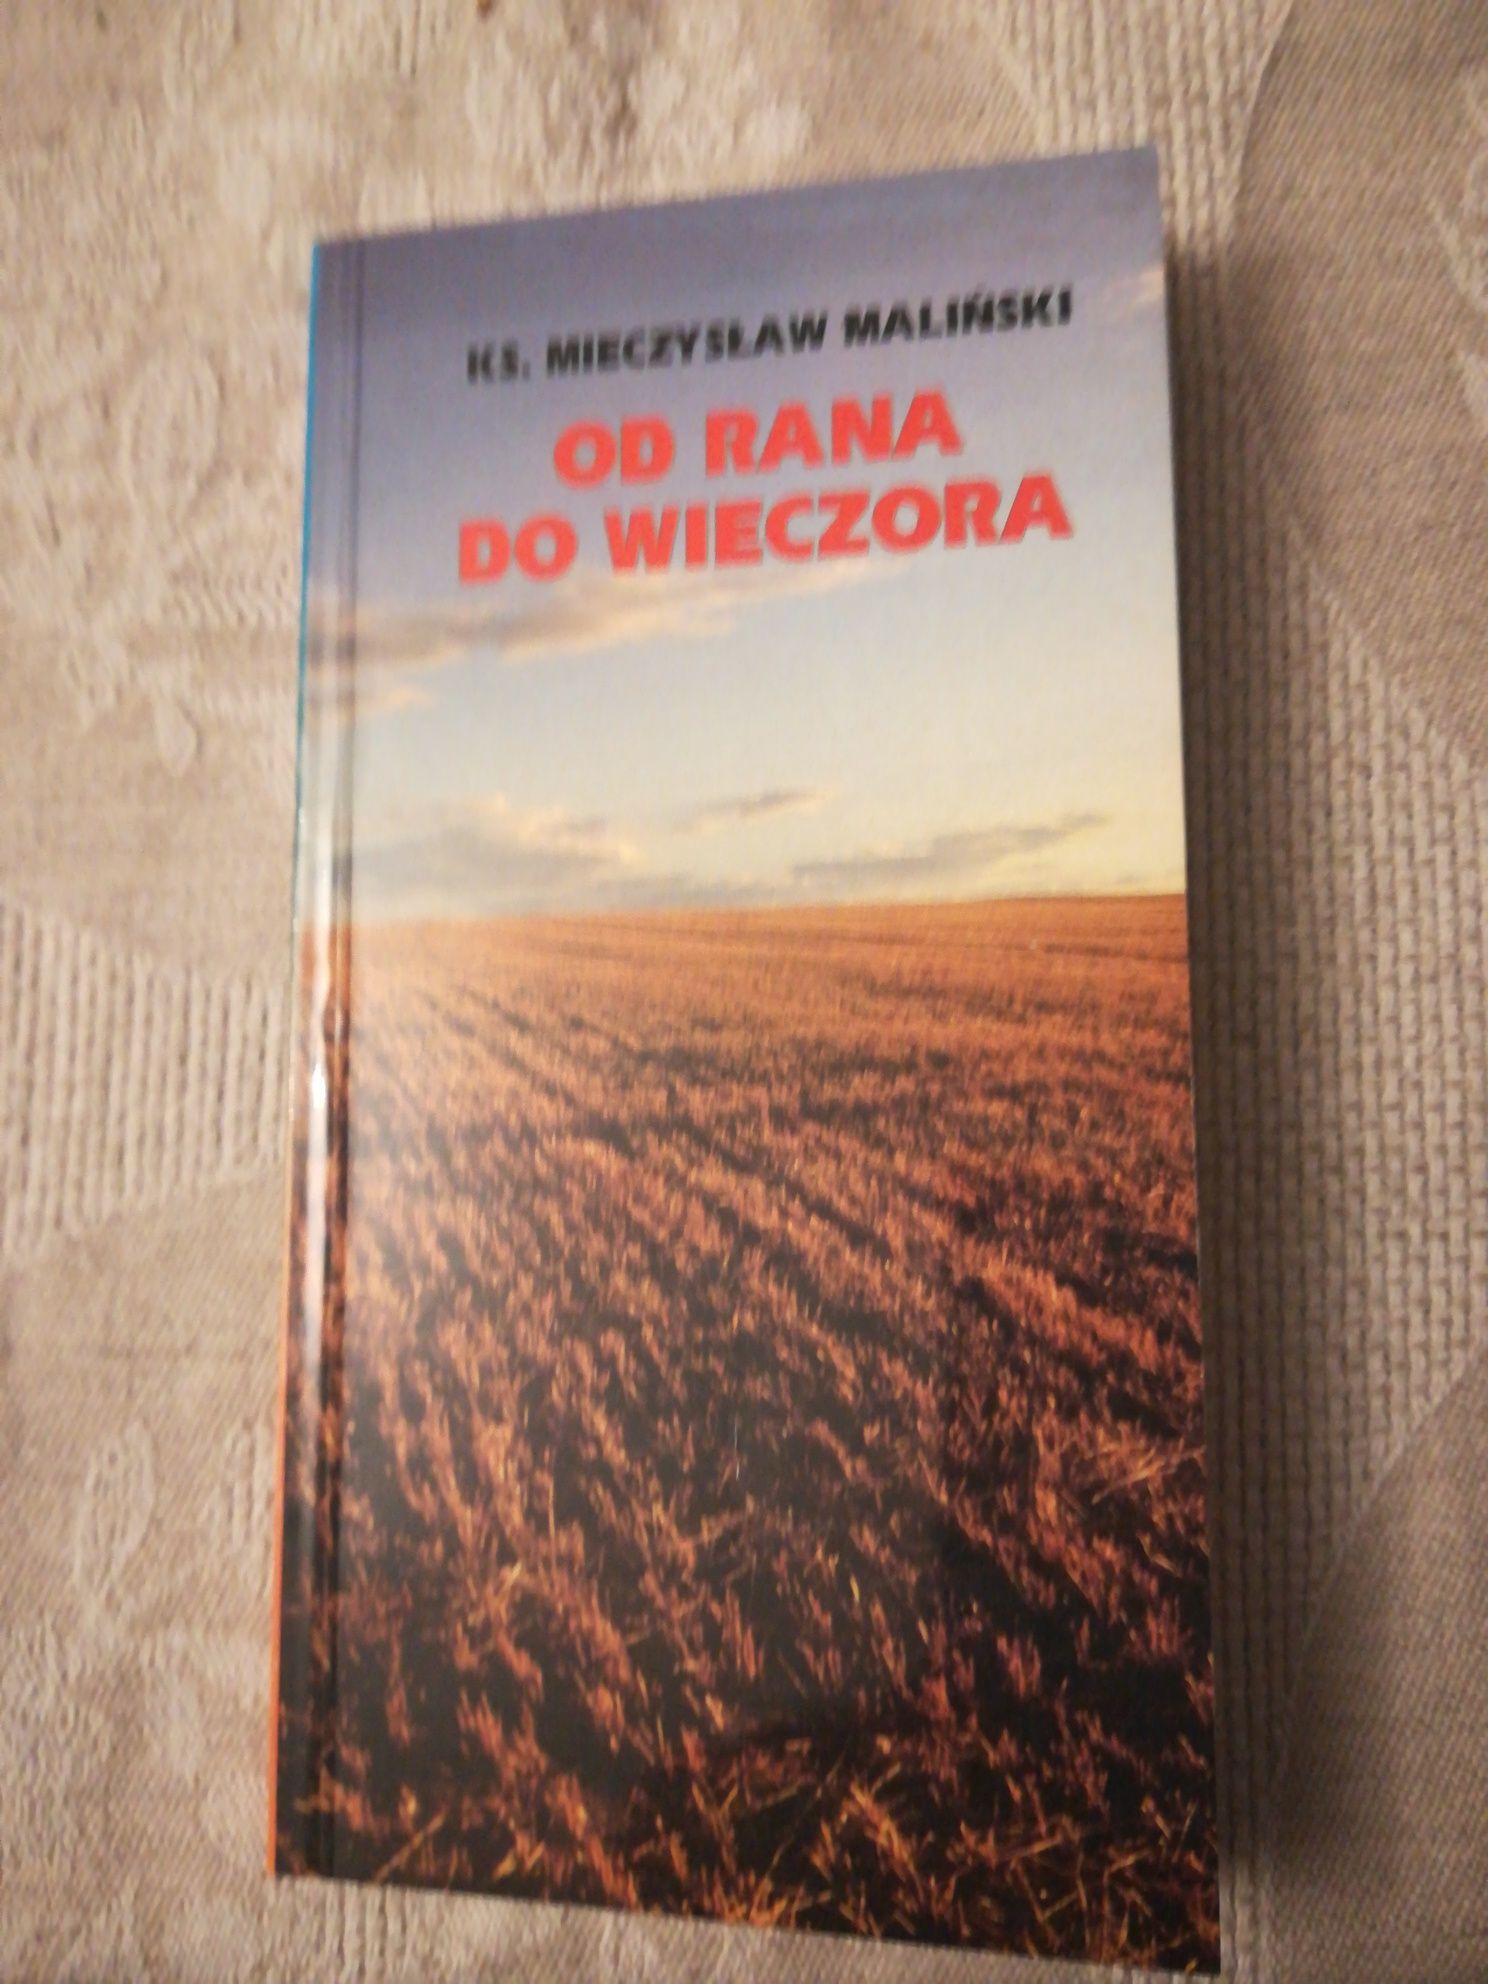 książka "Od rana do wieczora" Ks. Mieczysław Maliński